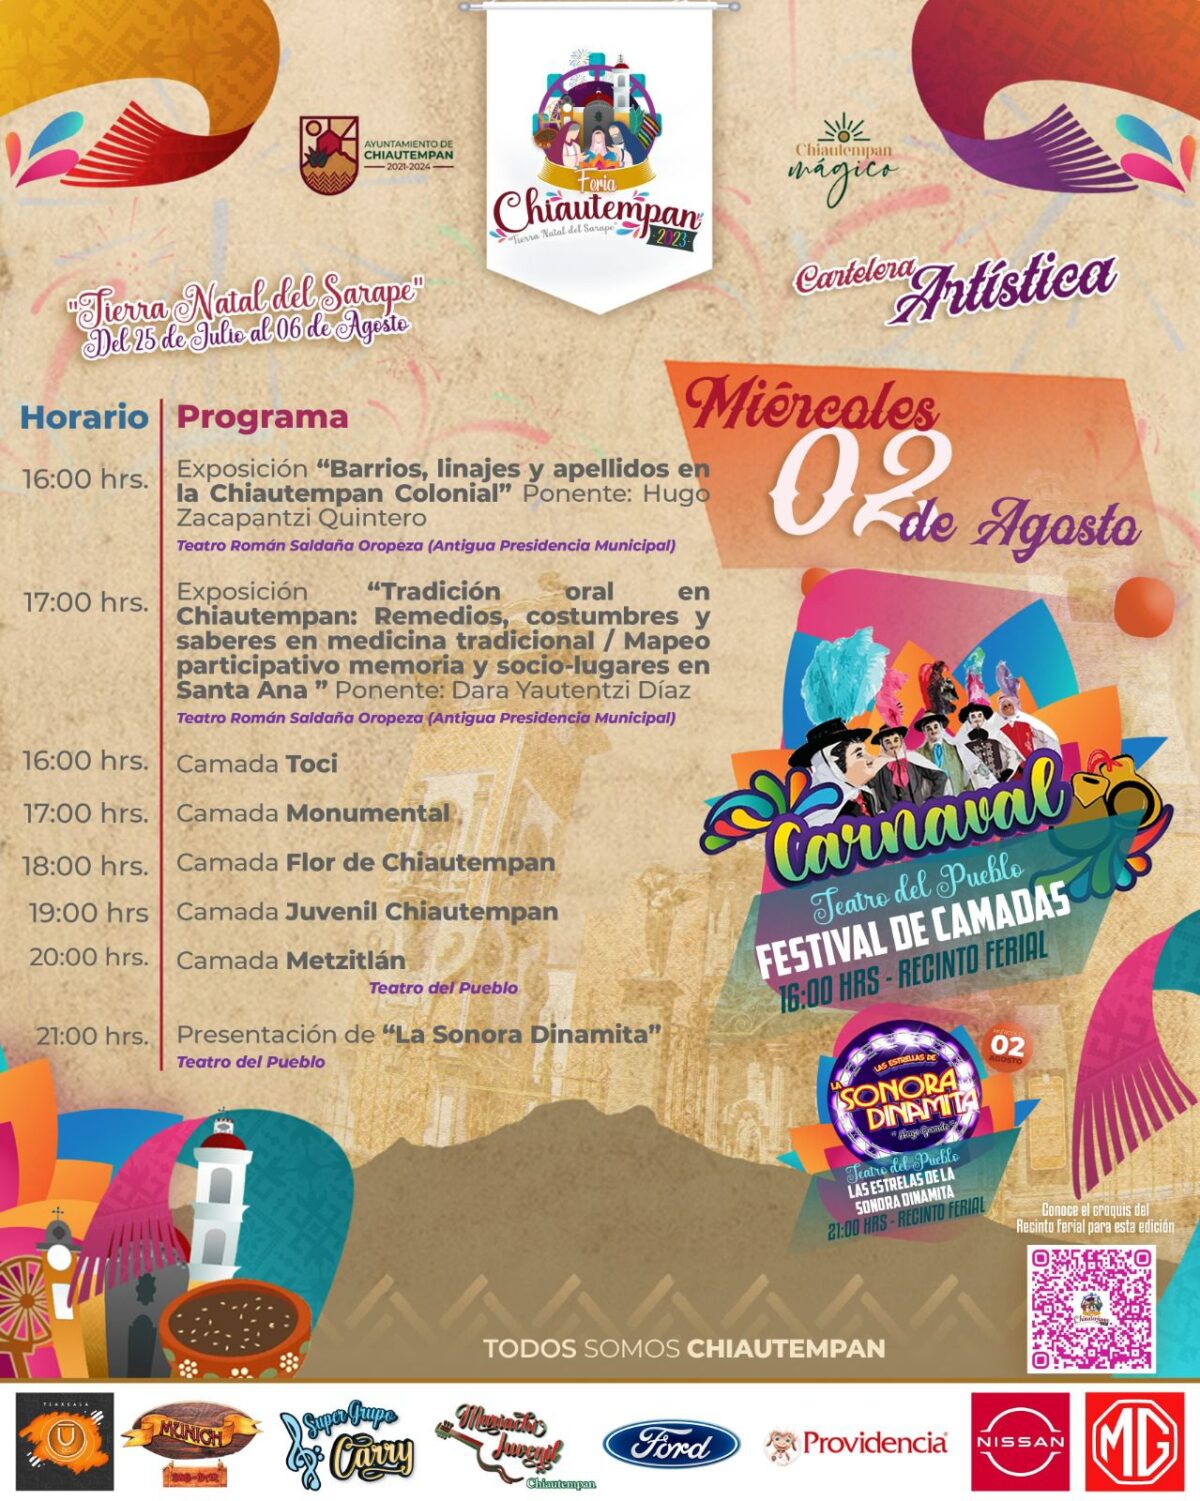 Este miércoles, Festival de Camadas de Huehues y Sonora Dinamita en la Feria de Chiautempan